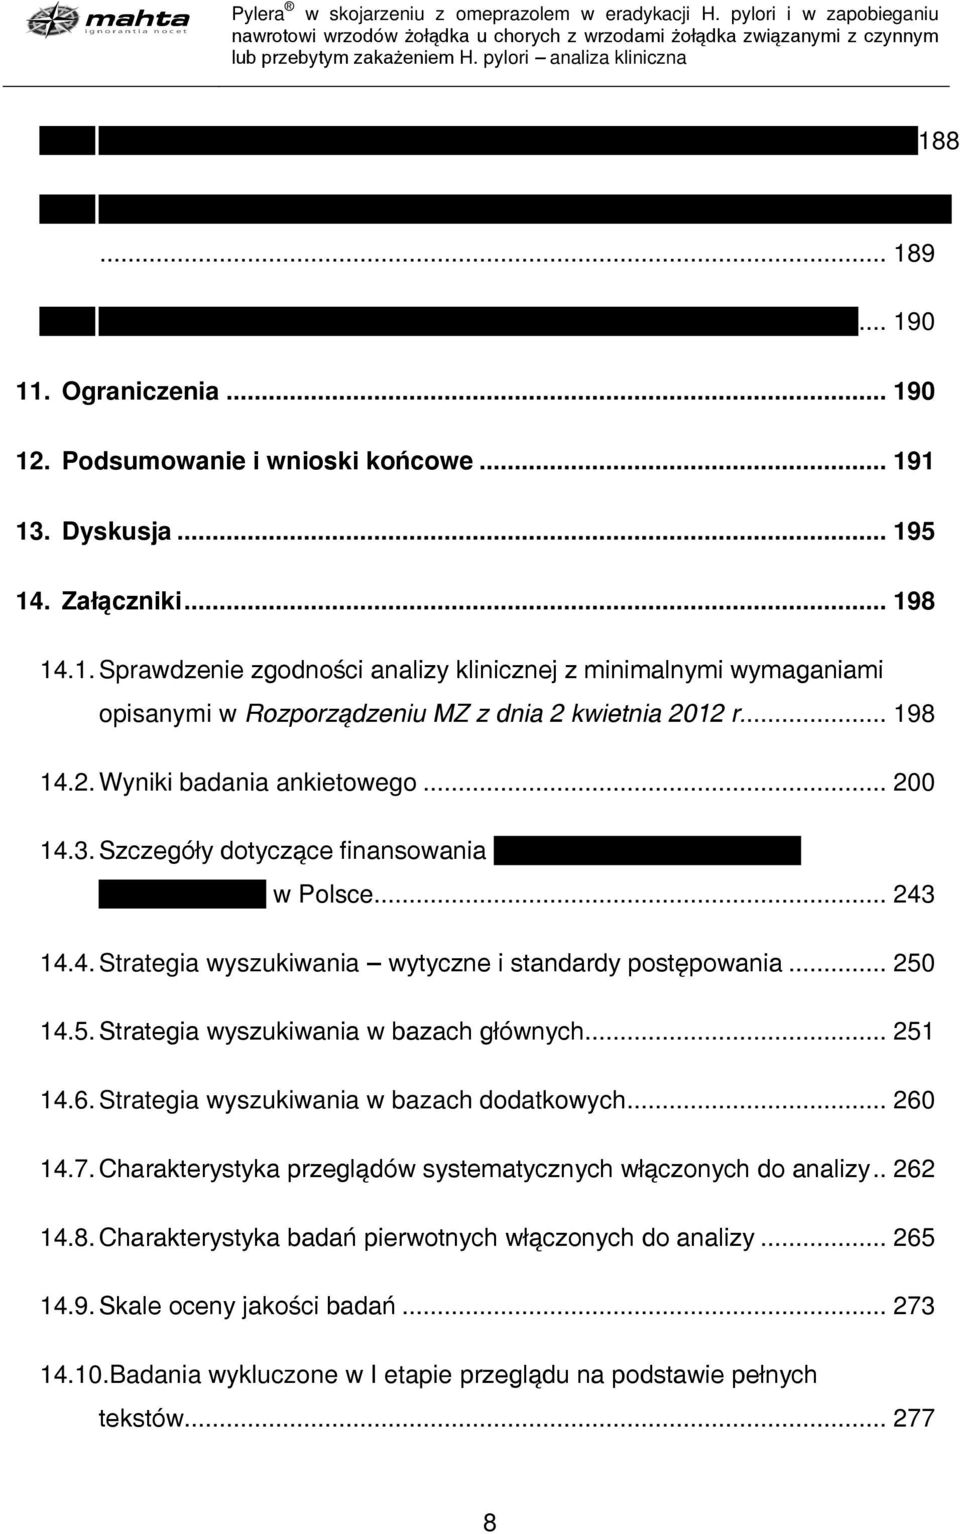 .. 198 14.2. Wyniki badania ankietowego... 200 14.3. Szczegóły dotyczące finansowania w Polsce... 243 14.4. Strategia wyszukiwania wytyczne i standardy postępowania... 250